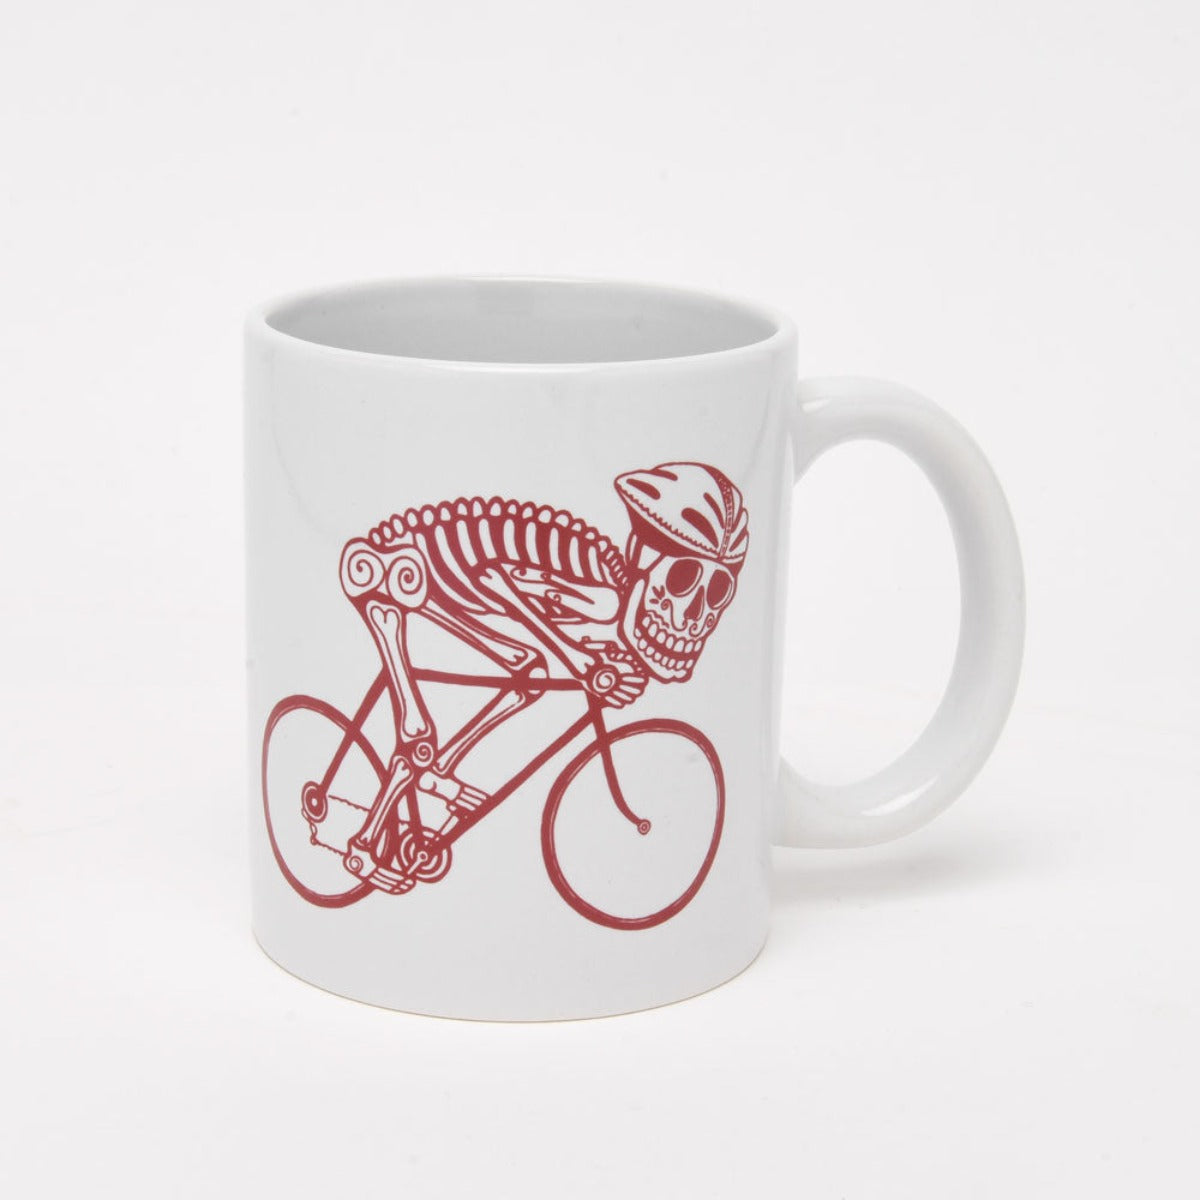 Bike Skeleton Day of the Dead Mug